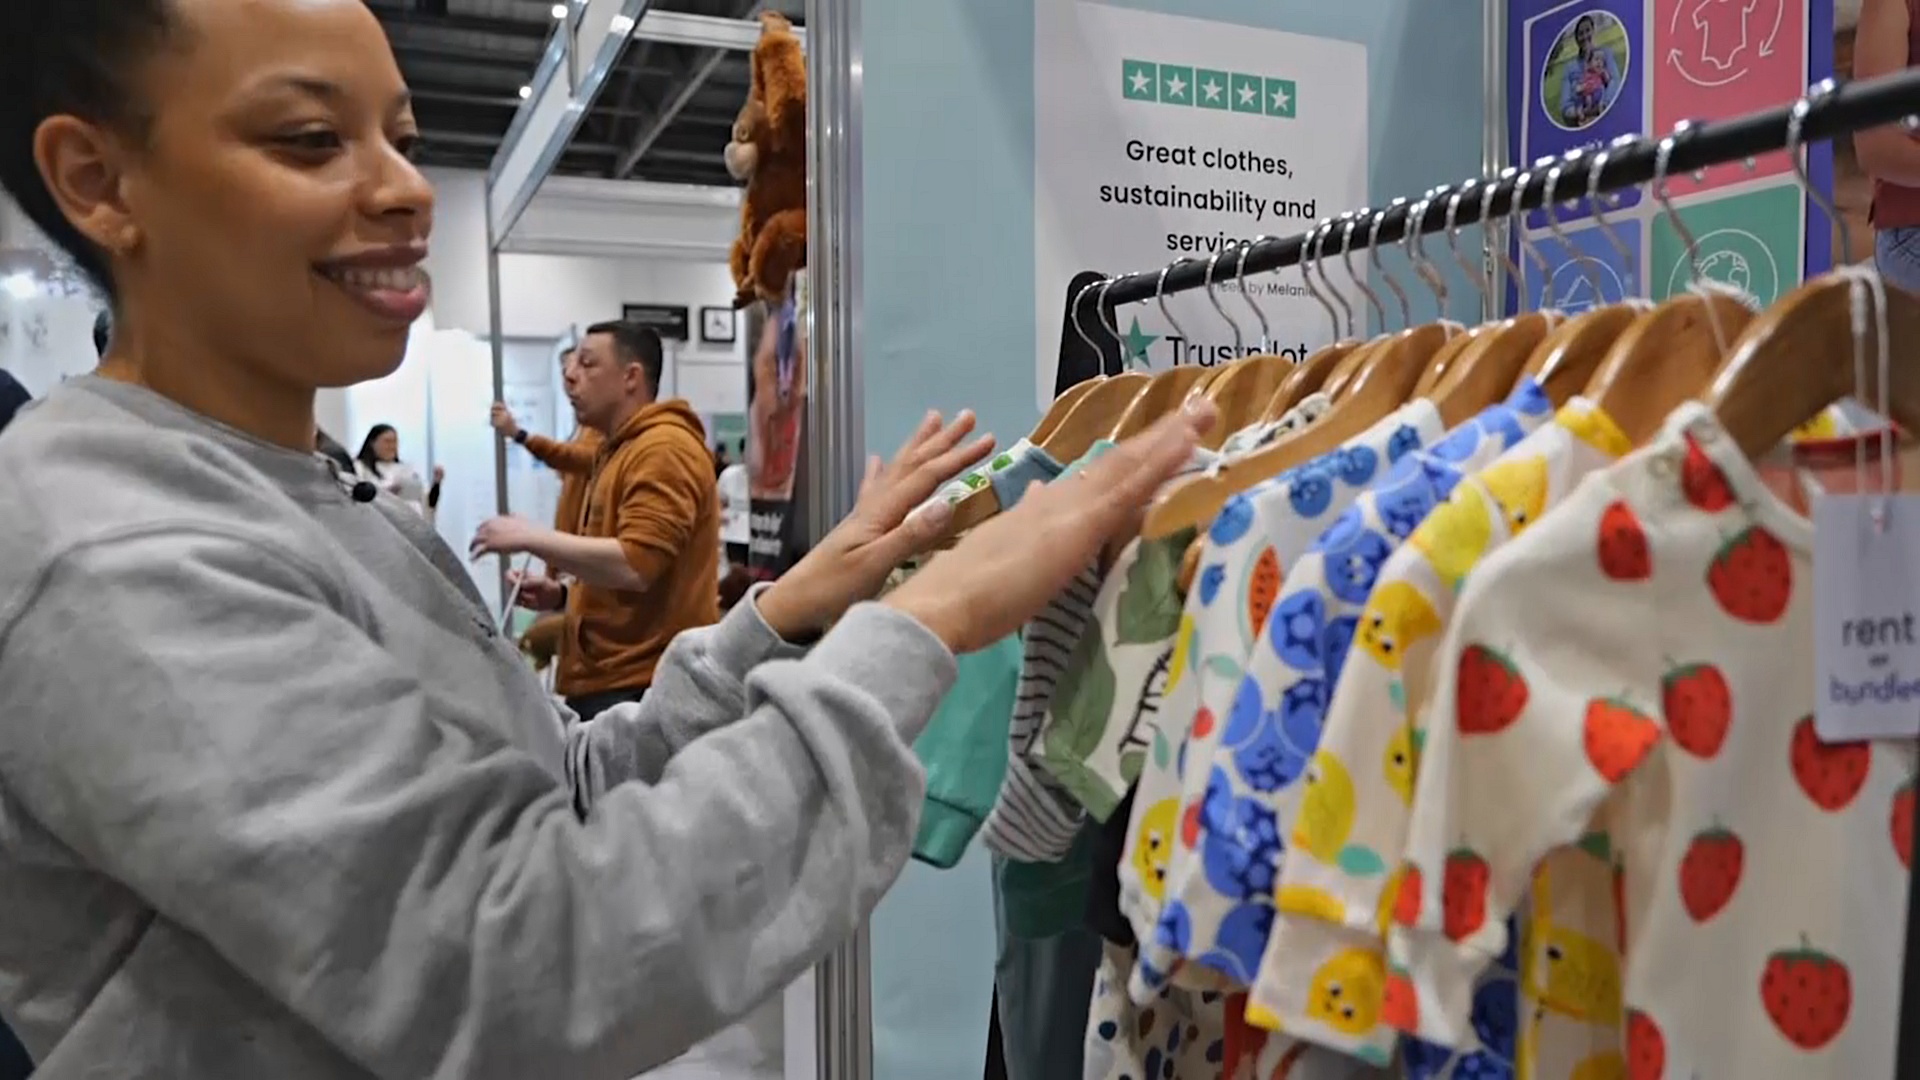 Многоразовые подгузники и одежда напрокат: выставка детских товаров в Лондоне